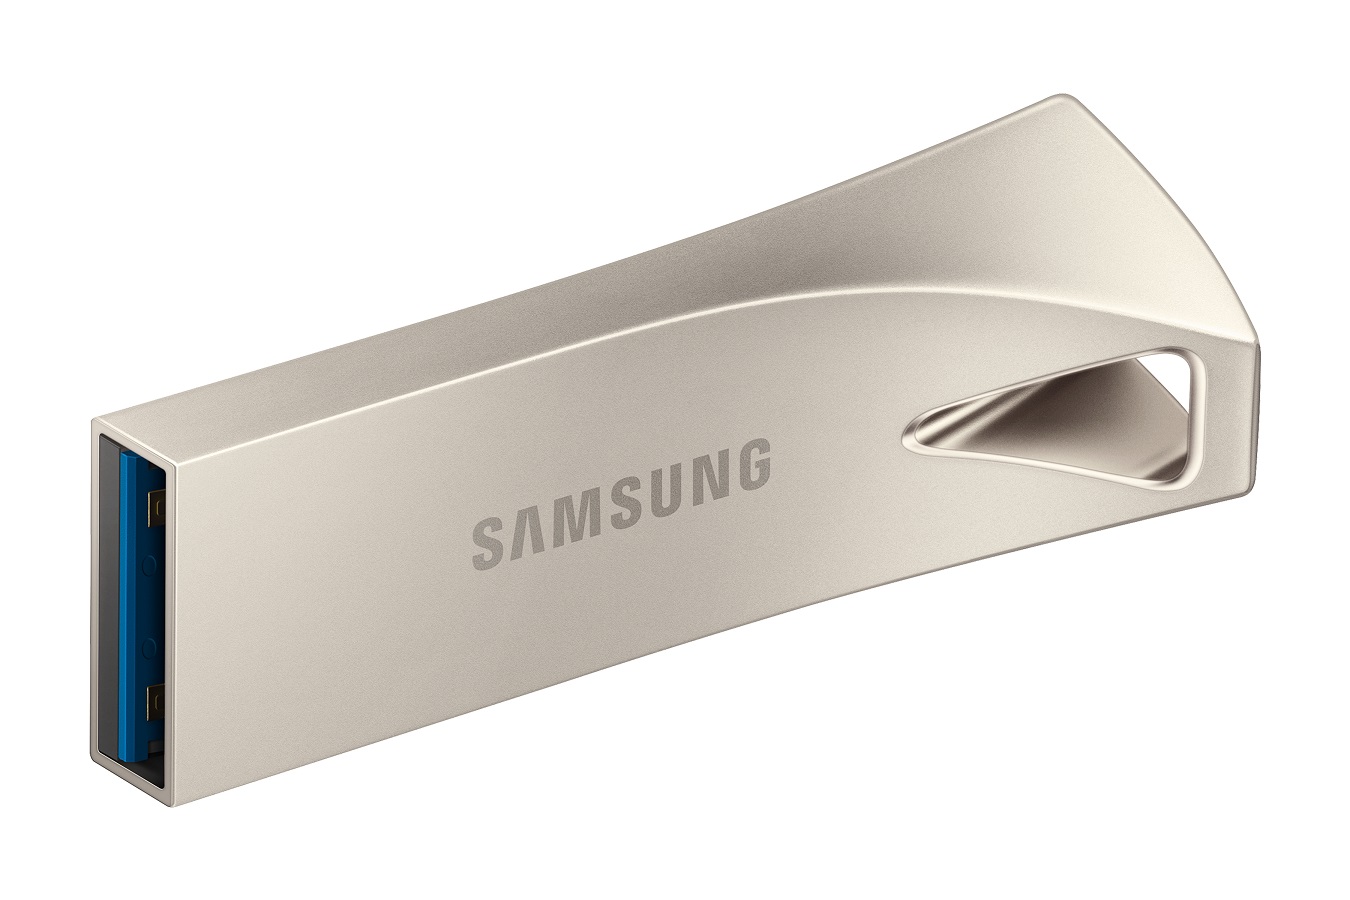 USB kľúč Samsung BAR Plus 512 GB, USB 3.2 Gen 1, strieborný